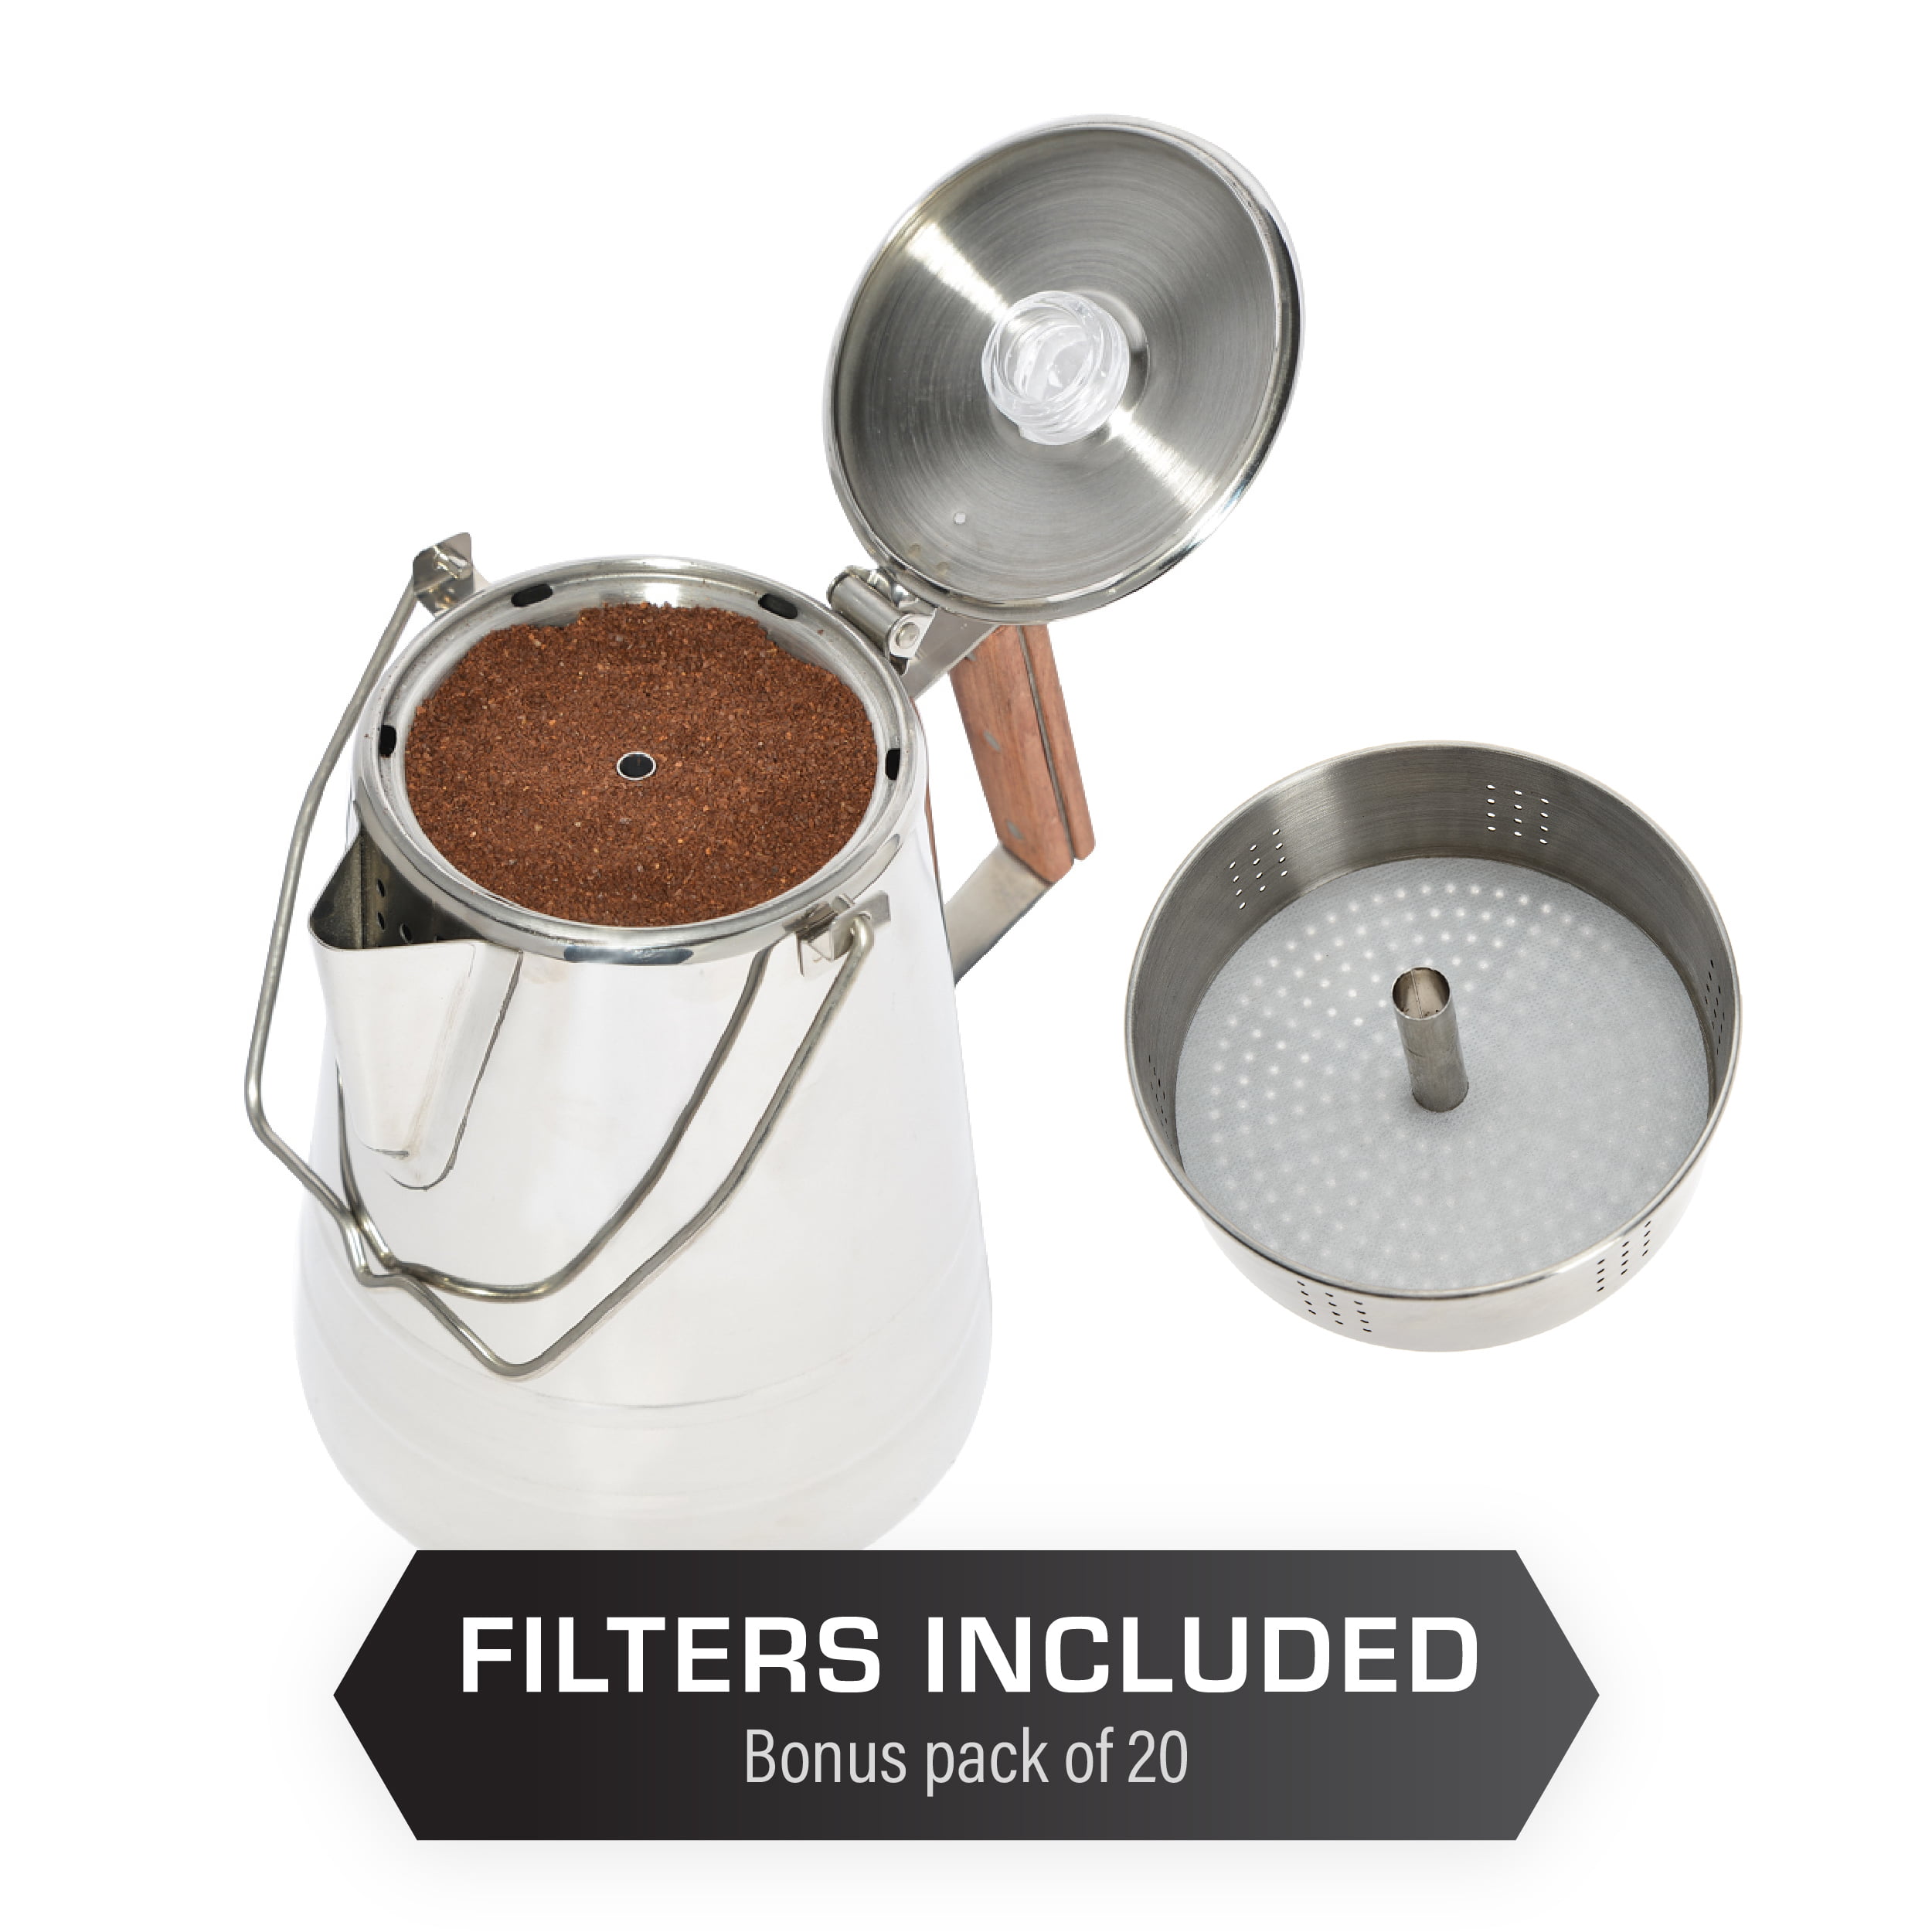 Coletti Bozeman Camping Coffee Pot – Coffee Percolator – Percolator Coffee Pot for Campfire or Stove Top Coffee Making (6 Cup)